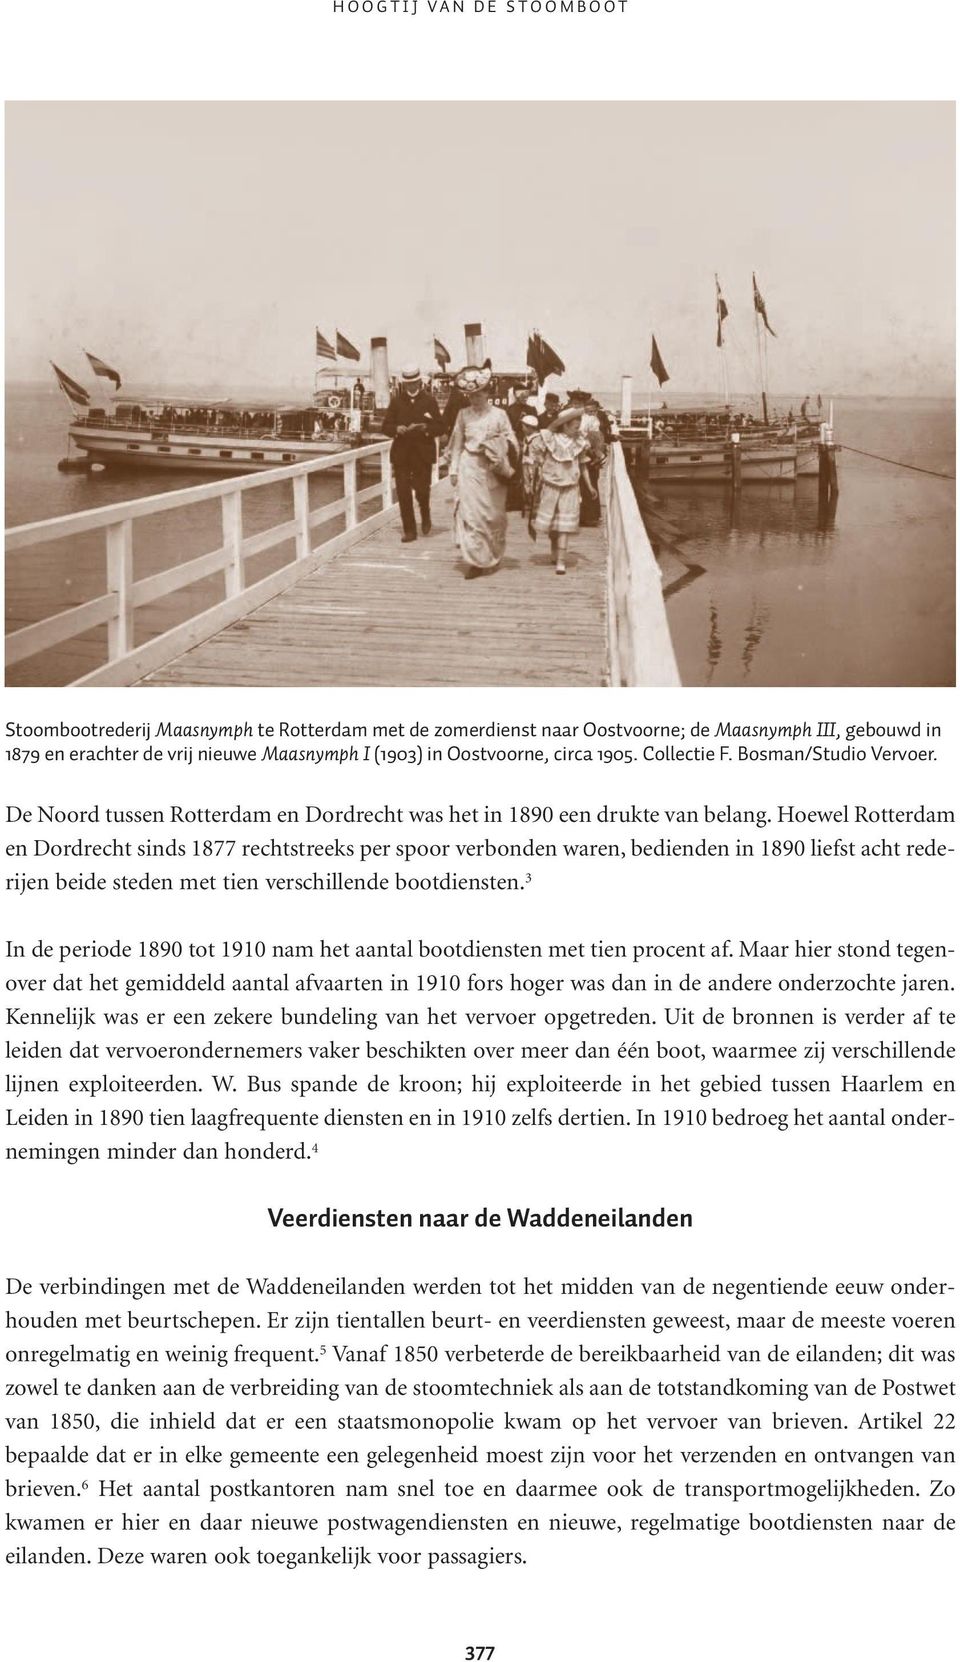 Hoewel Rotterdam en Dordrecht sinds 1877 rechtstreeks per spoor verbonden waren, bedienden in 1890 liefst acht rederijen beide steden met tien verschillende bootdiensten.